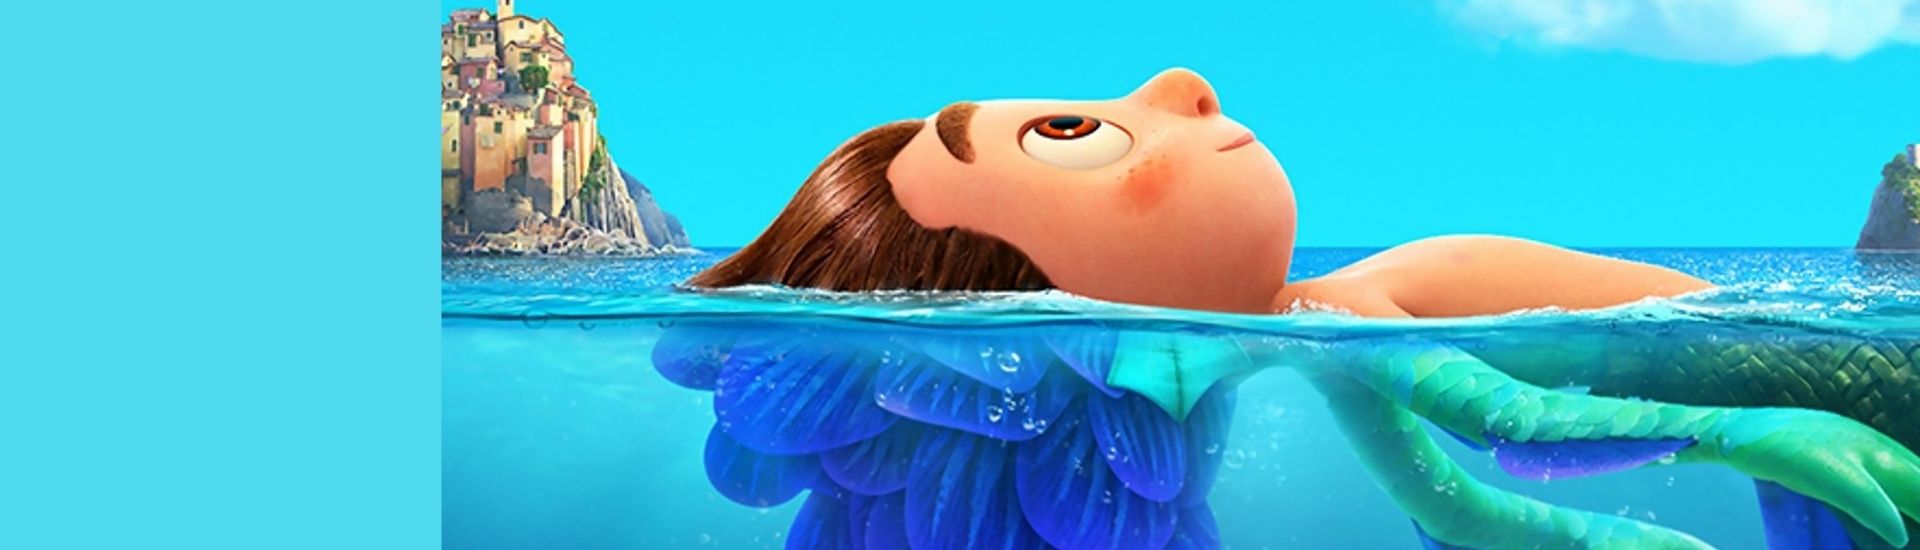 Imagen de de Luca, el personaje protagonista de la película de Pixar llamada con el mismo nombre. En la imagen, se ve Luca mitad humano y mitad monstruo marino